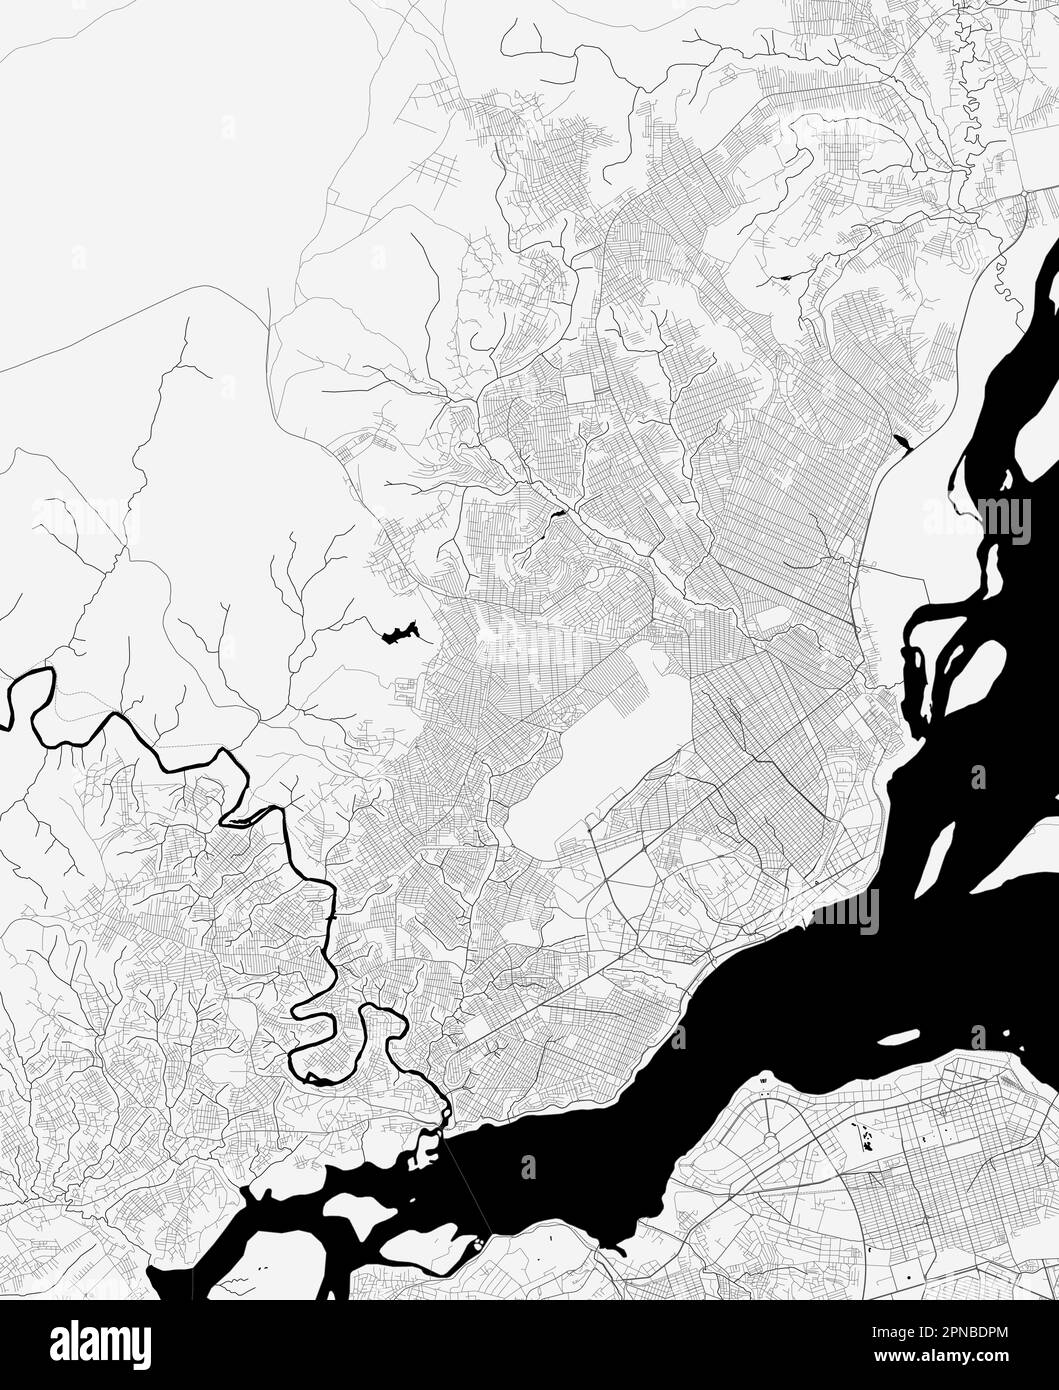 Mappa della città di Brazzaville, Repubblica del Congo. Poster in bianco e nero urbano. Immagine della mappa stradale con vista dell'area metropolitana. Illustrazione Vettoriale